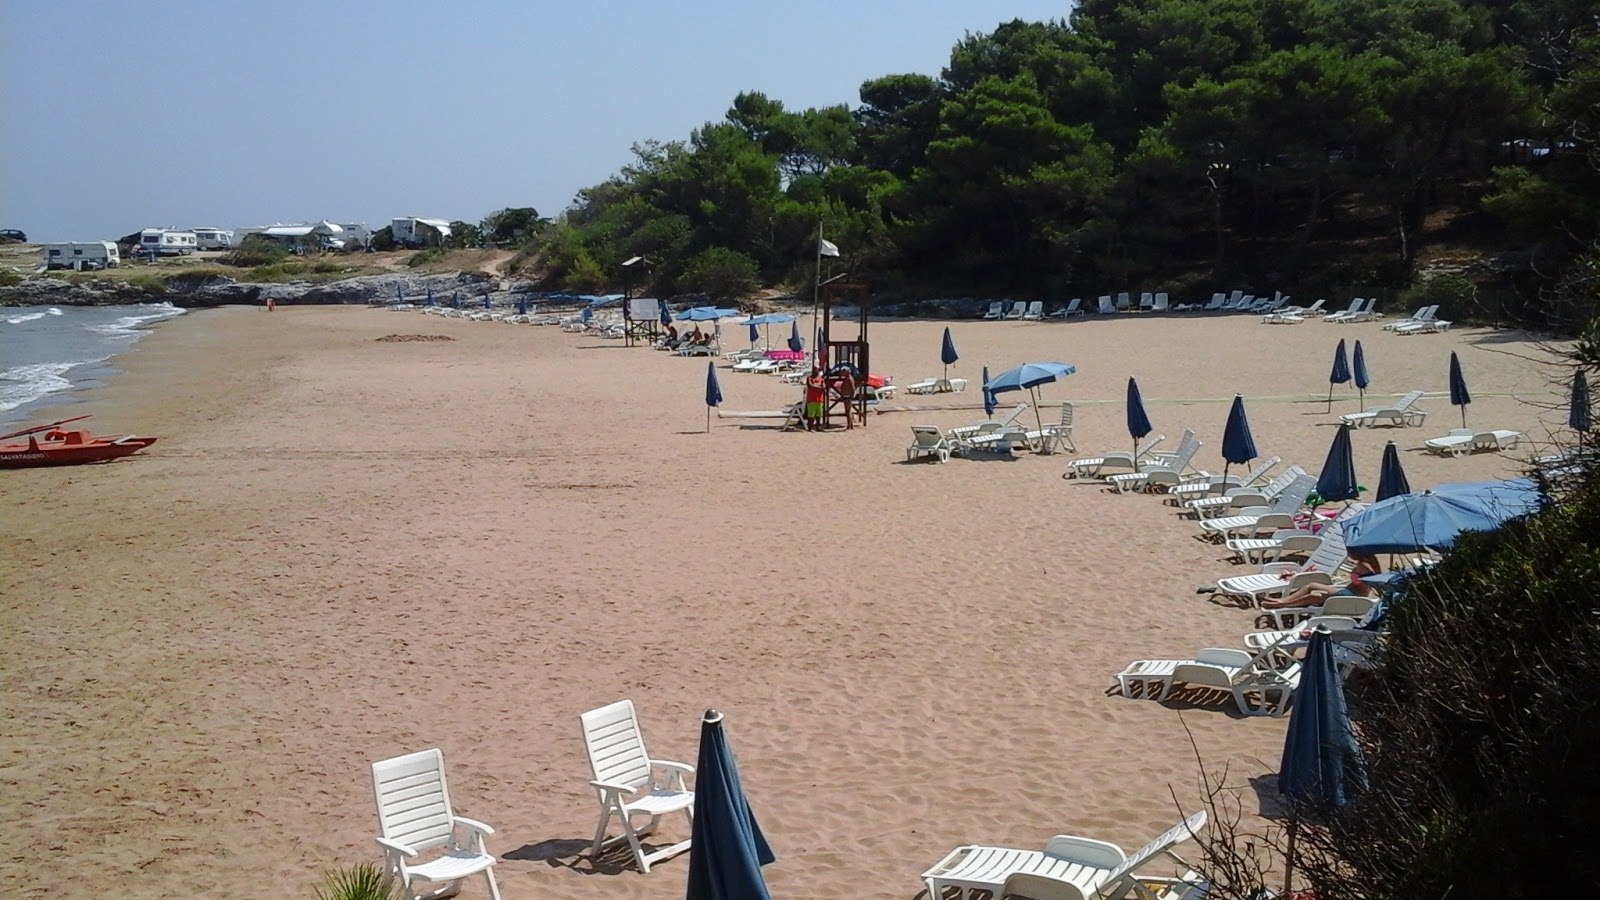 Foto van Spiaggia di Braico met hoog niveau van netheid